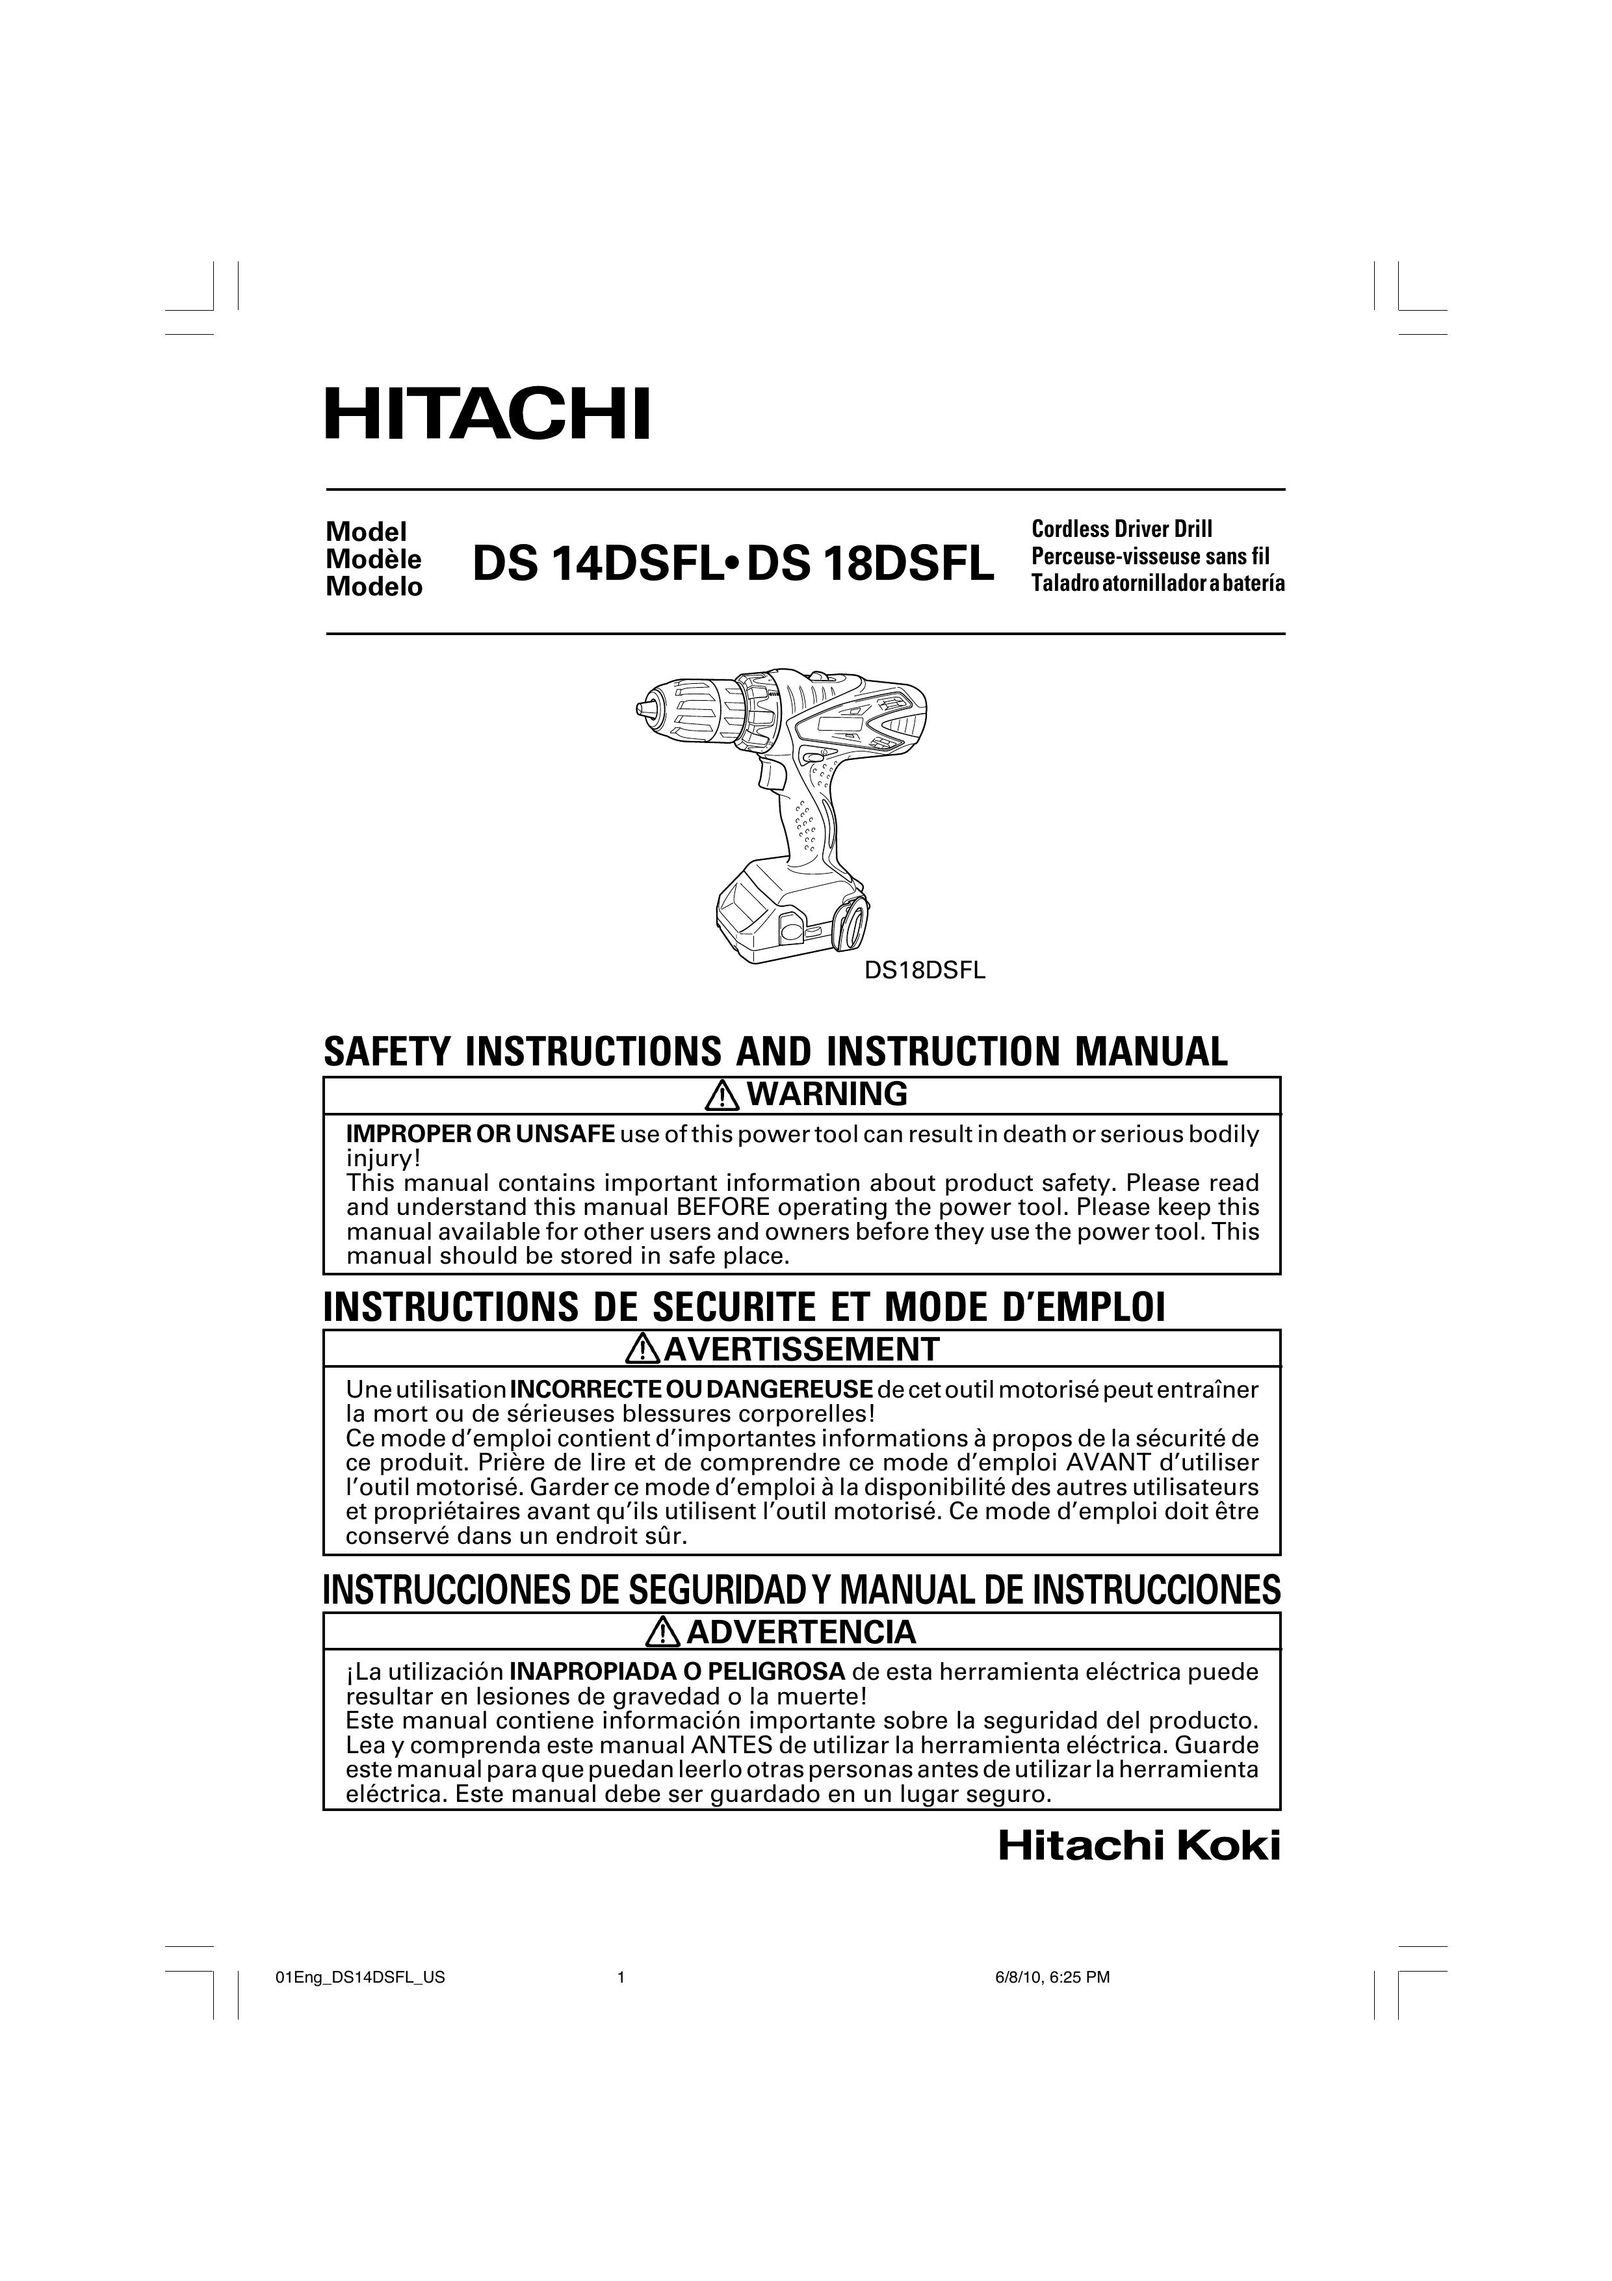 Hitachi DS 18DSFL Cordless Drill User Manual